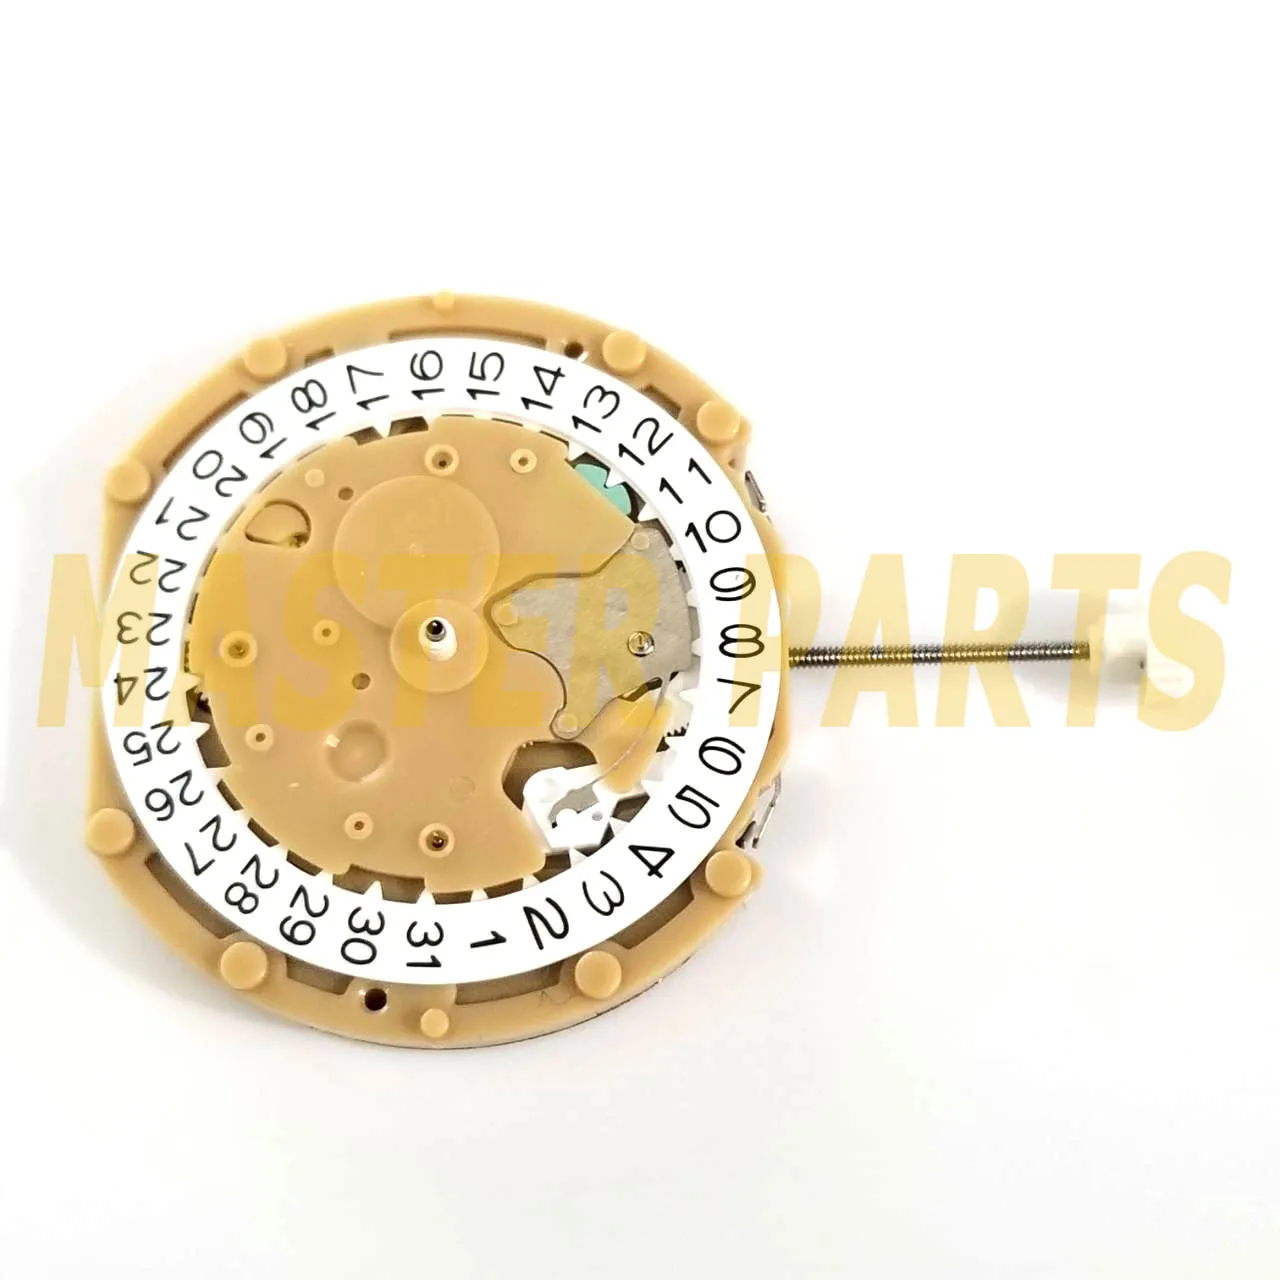 Кварцов механизъм Sunon PE60 Кварцов часовников механизъм с 3 стрелки и дата